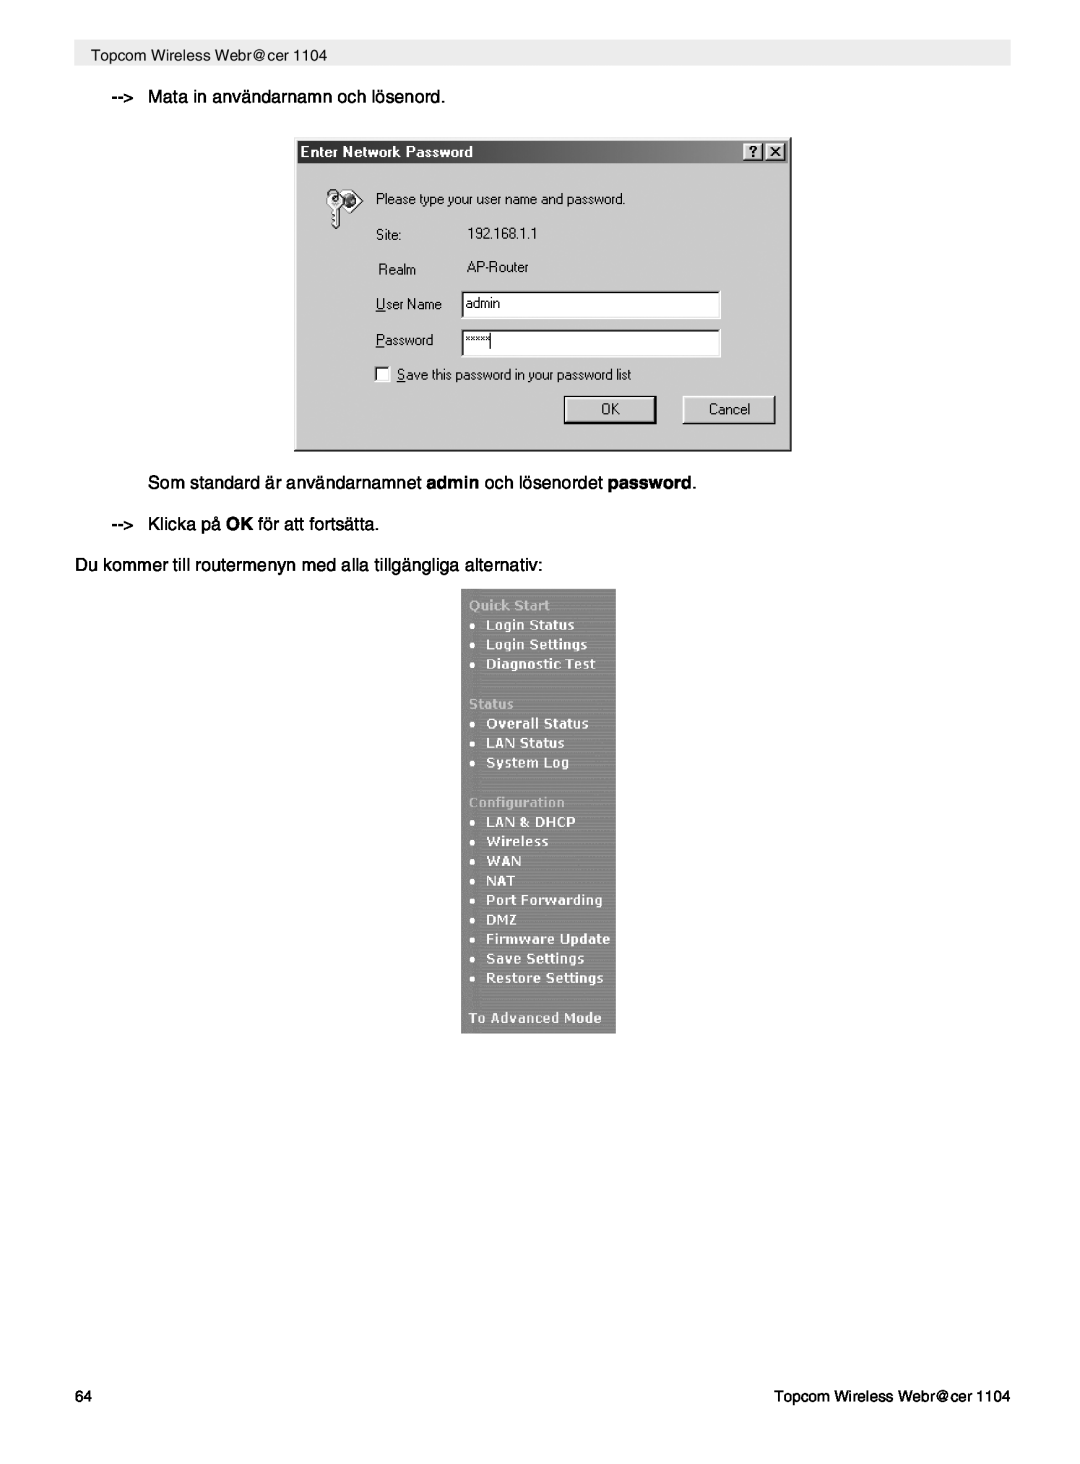 Topcom 1104 Mata in användarnamn och lösenord, Du kommer till routermenyn med alla tillgängliga alternativ 